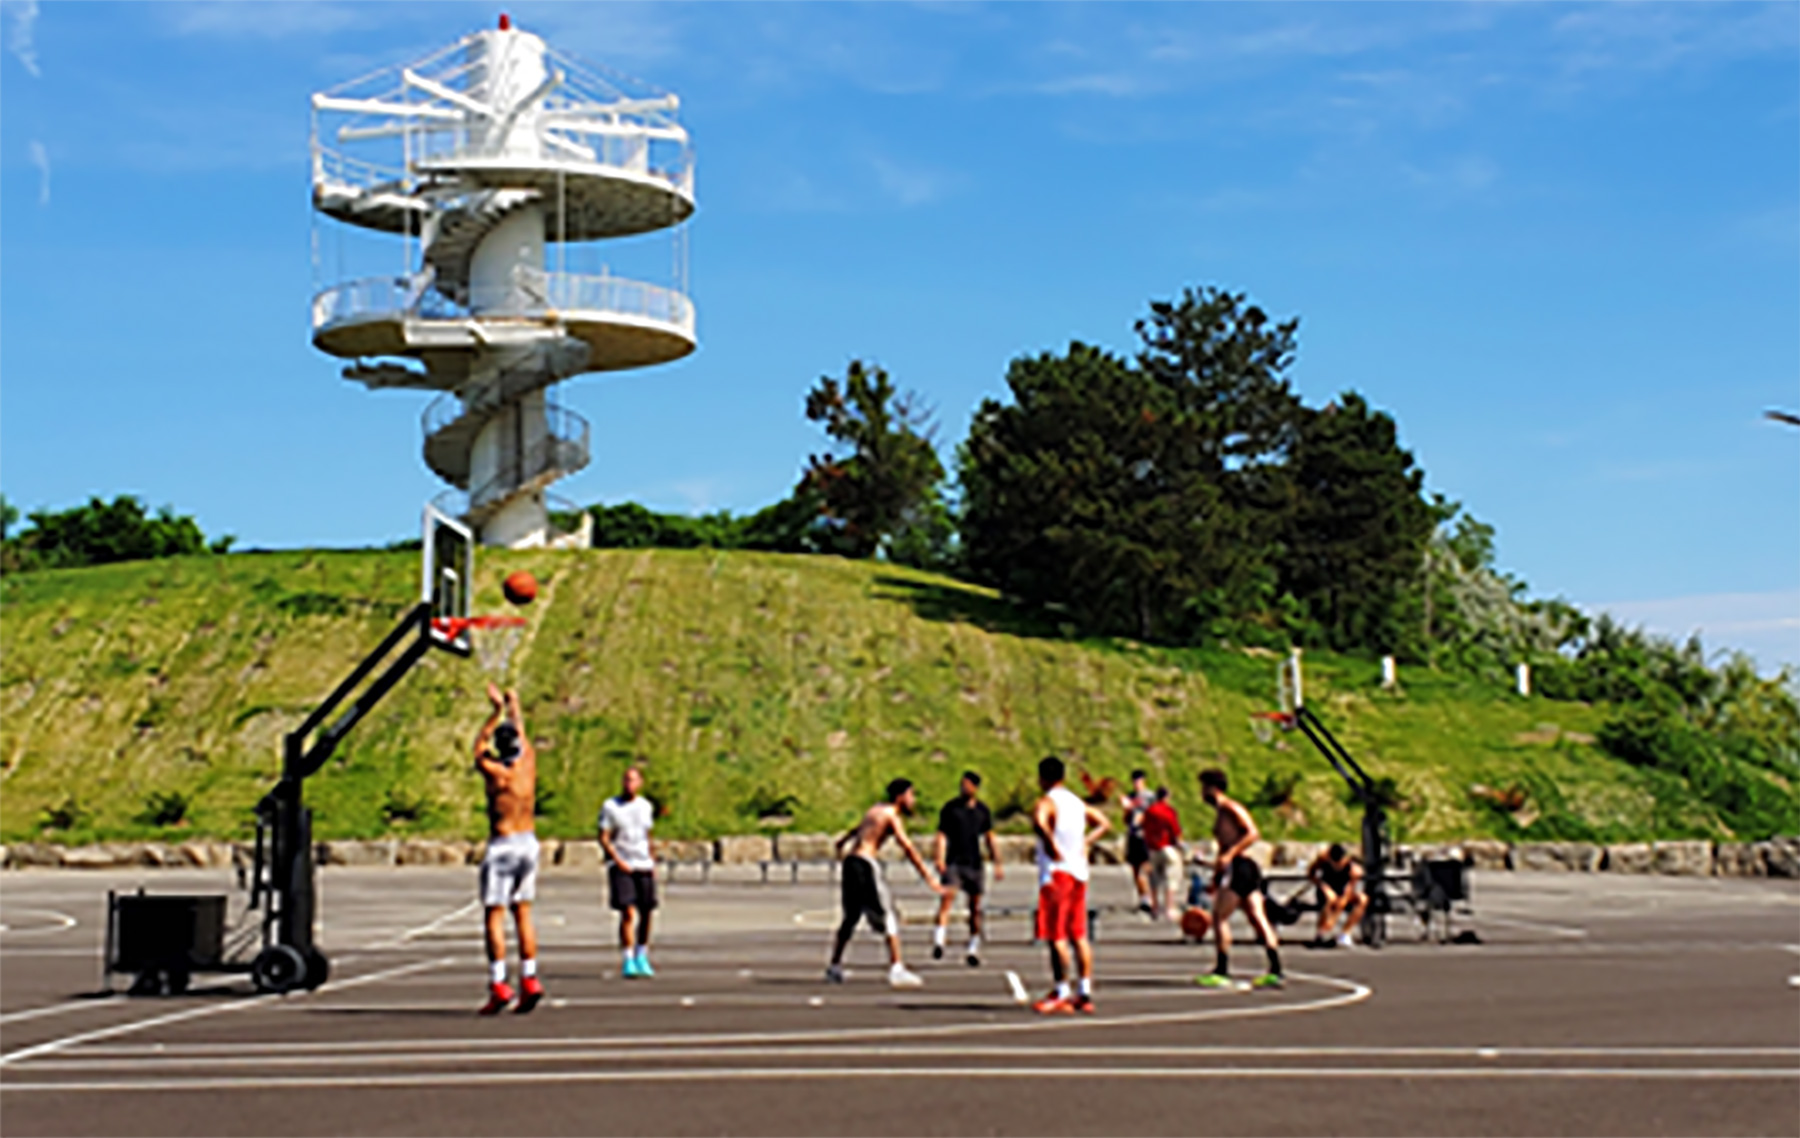 Groupe de personnes jouant au basketball sur une surface pavée. Une colline herbeuse et une tour sont en arrière-plan. 